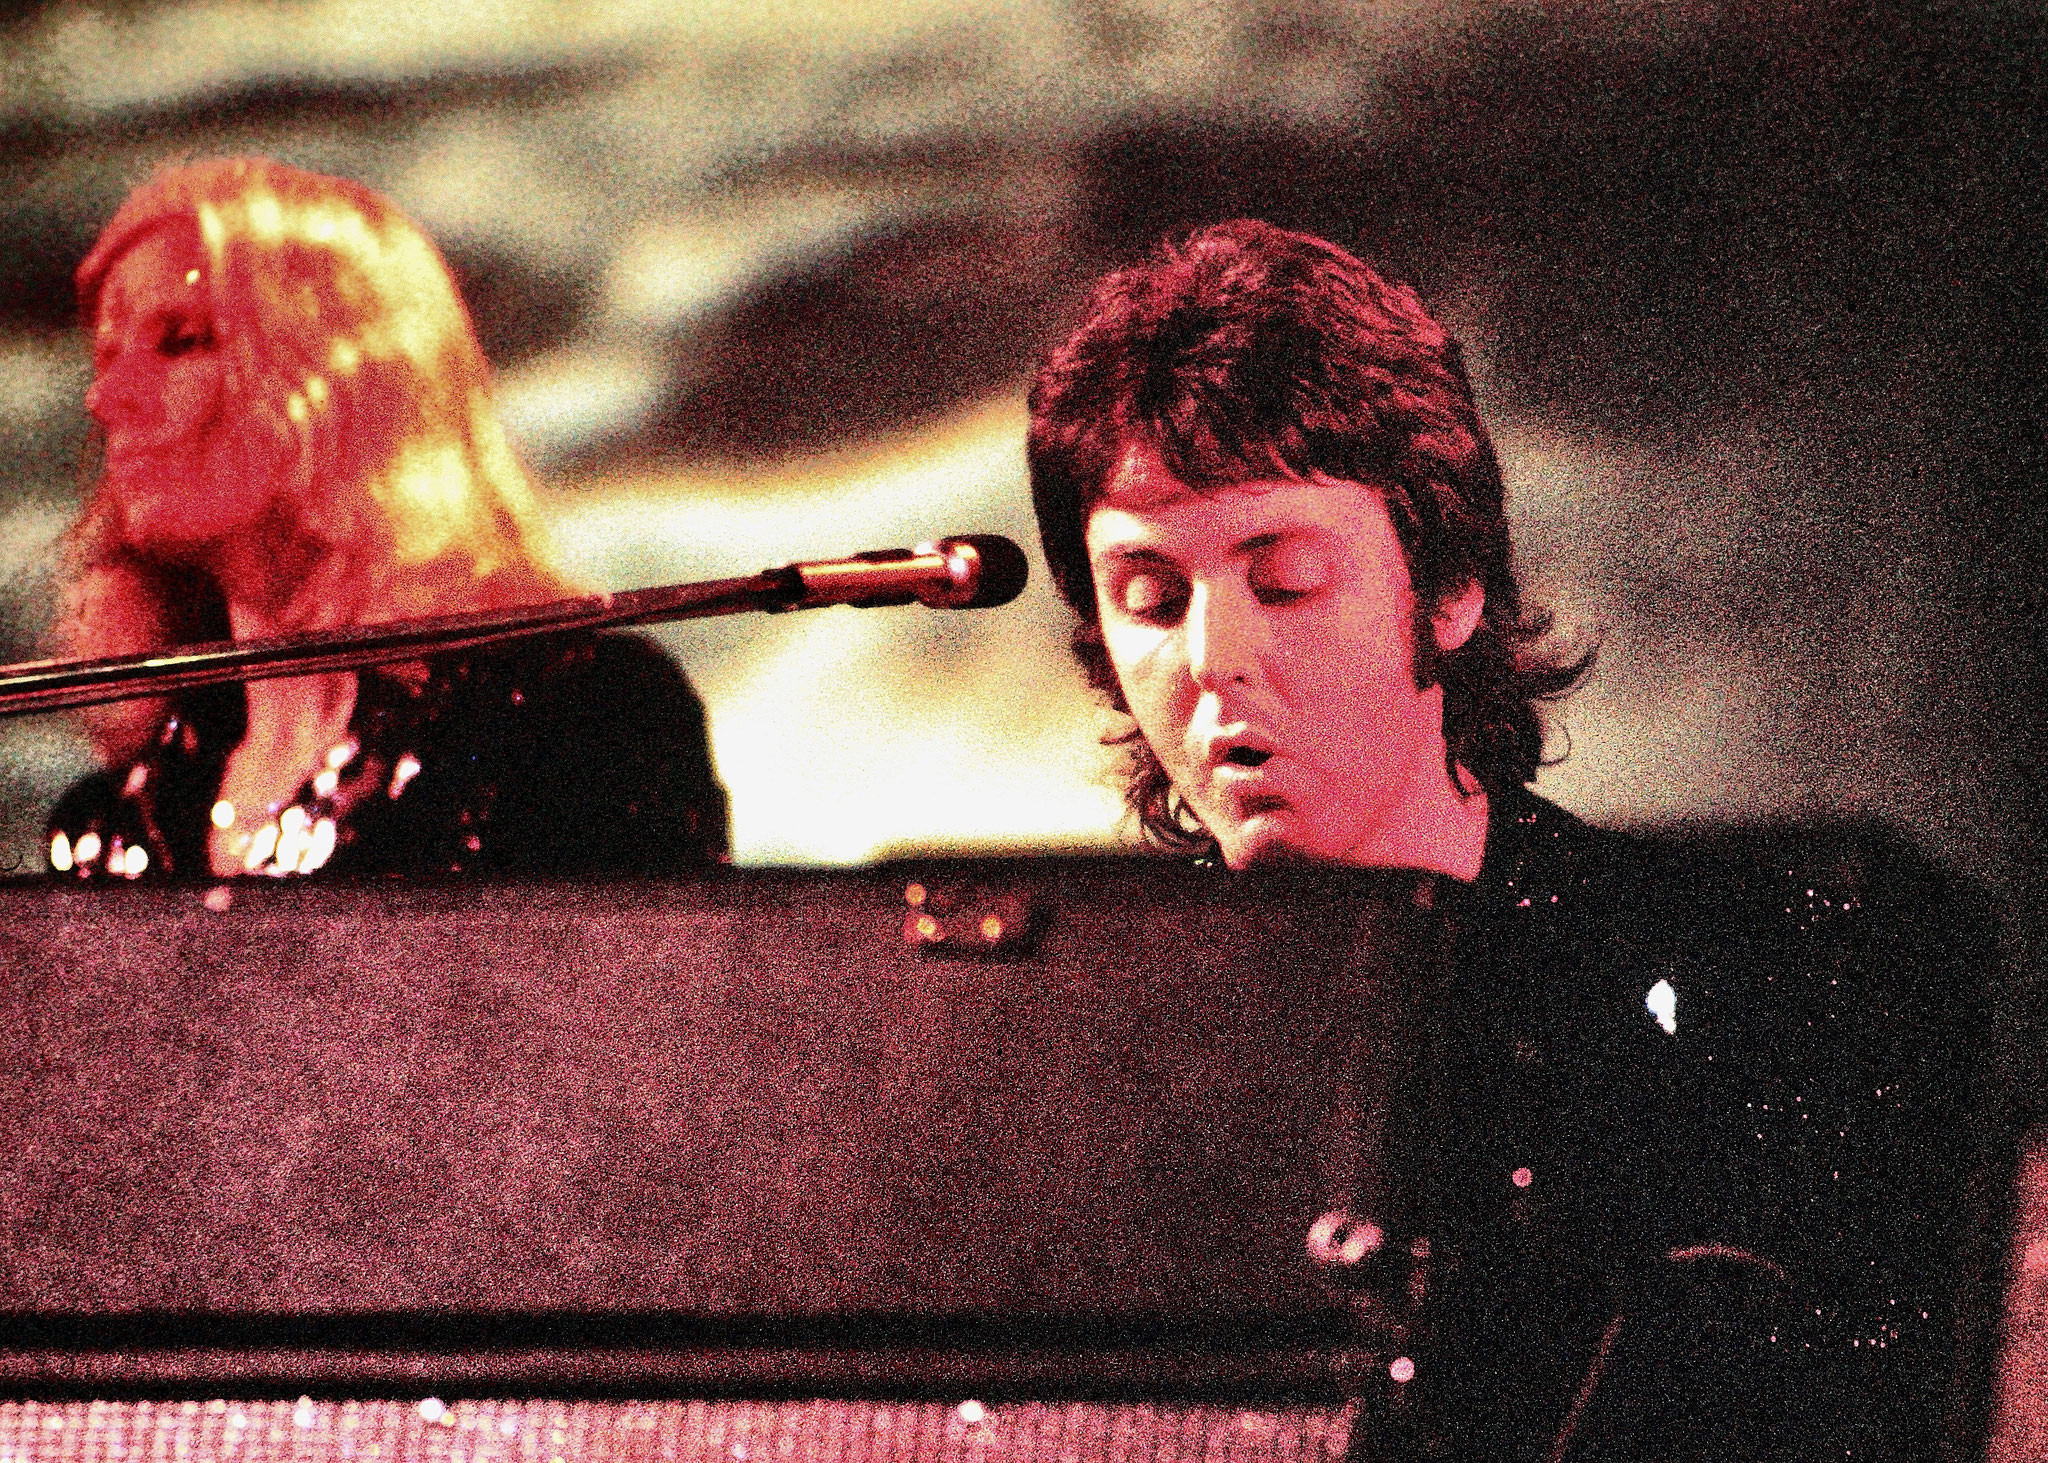 Paul McCartney am Klavier - ein Multi-Instrumentalist